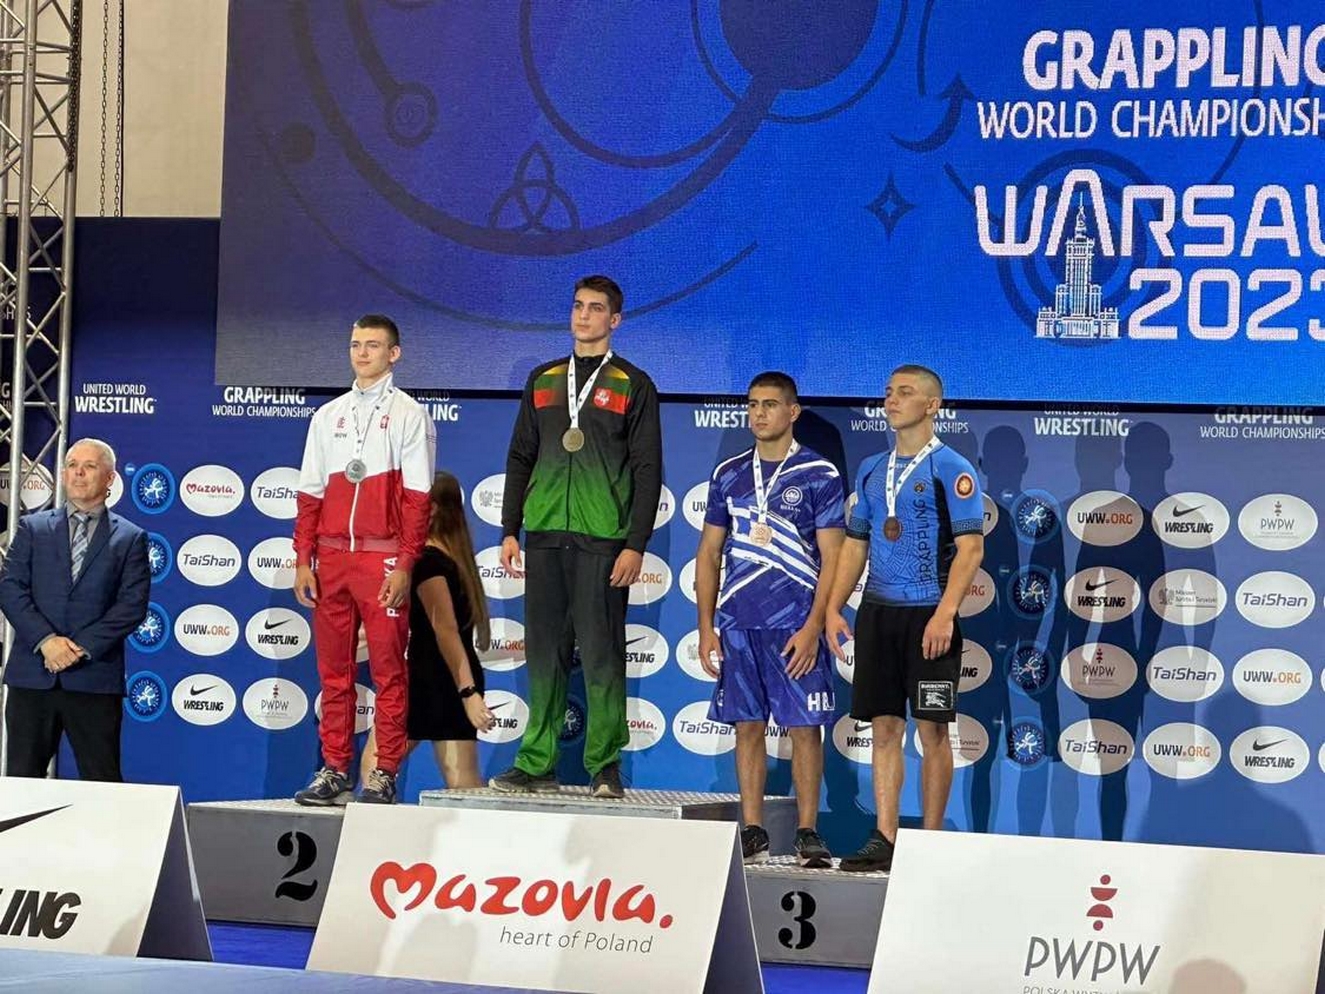 Ο Στέφανος Βαβίλης κατέκτησε το χάλκινο μετάλλιο στο Παγκόσμιο πρωτάθλημα Πάλης Υποταγής